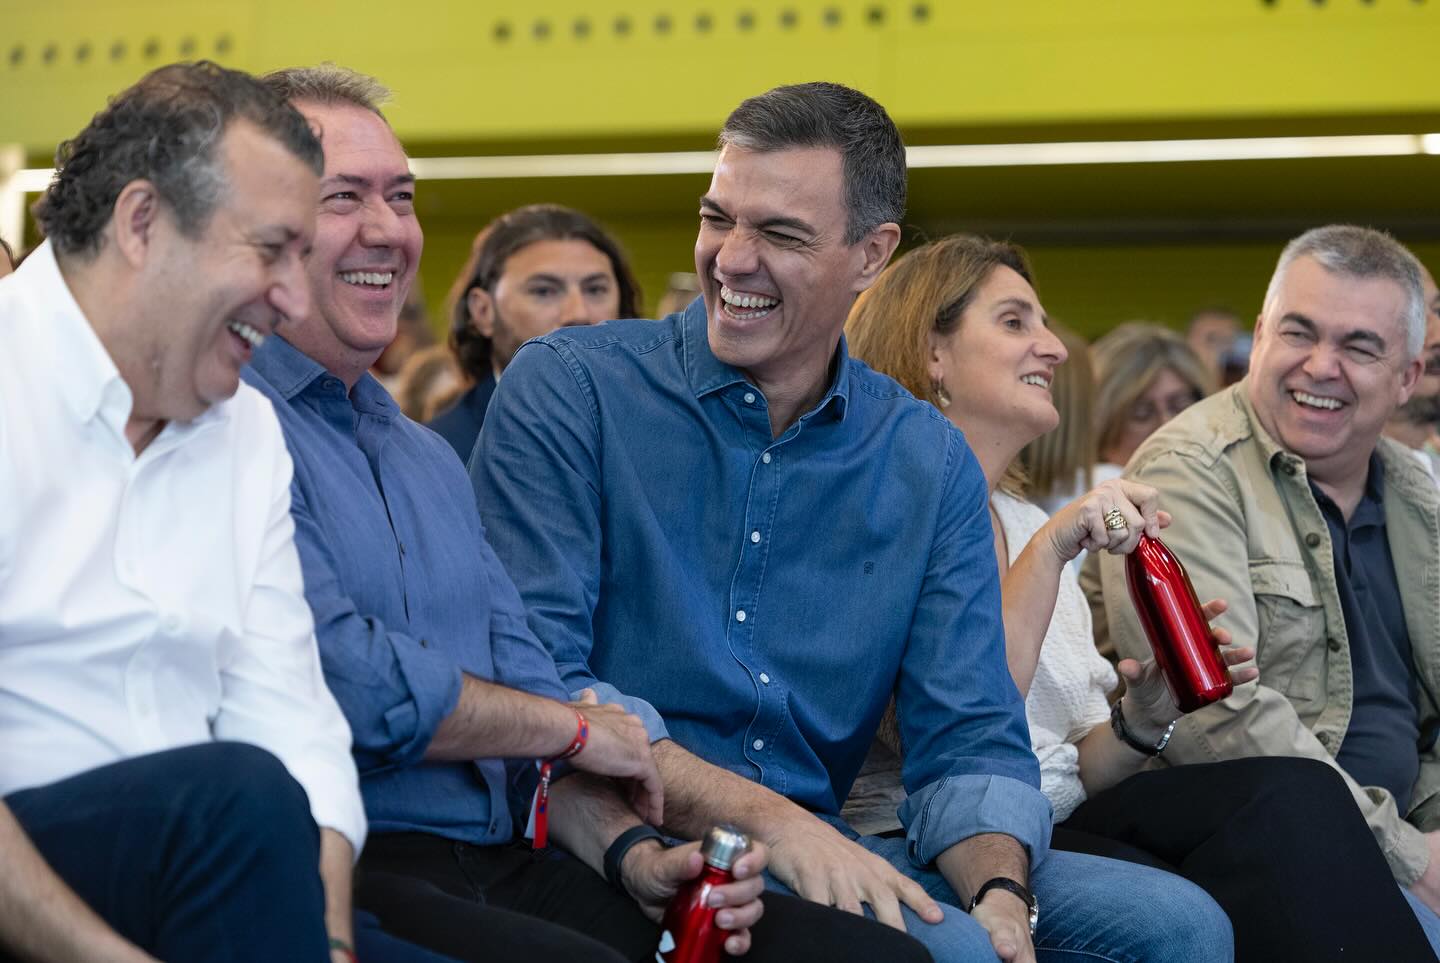 Juan Espadas junto al presidente del Gobierno de España y del PSOE nacional, Pedro Sánchez, y al presidente de la Diputación de Sevilla, Javier Fernández de los Ríos (PSOE). Todos sonriendo.